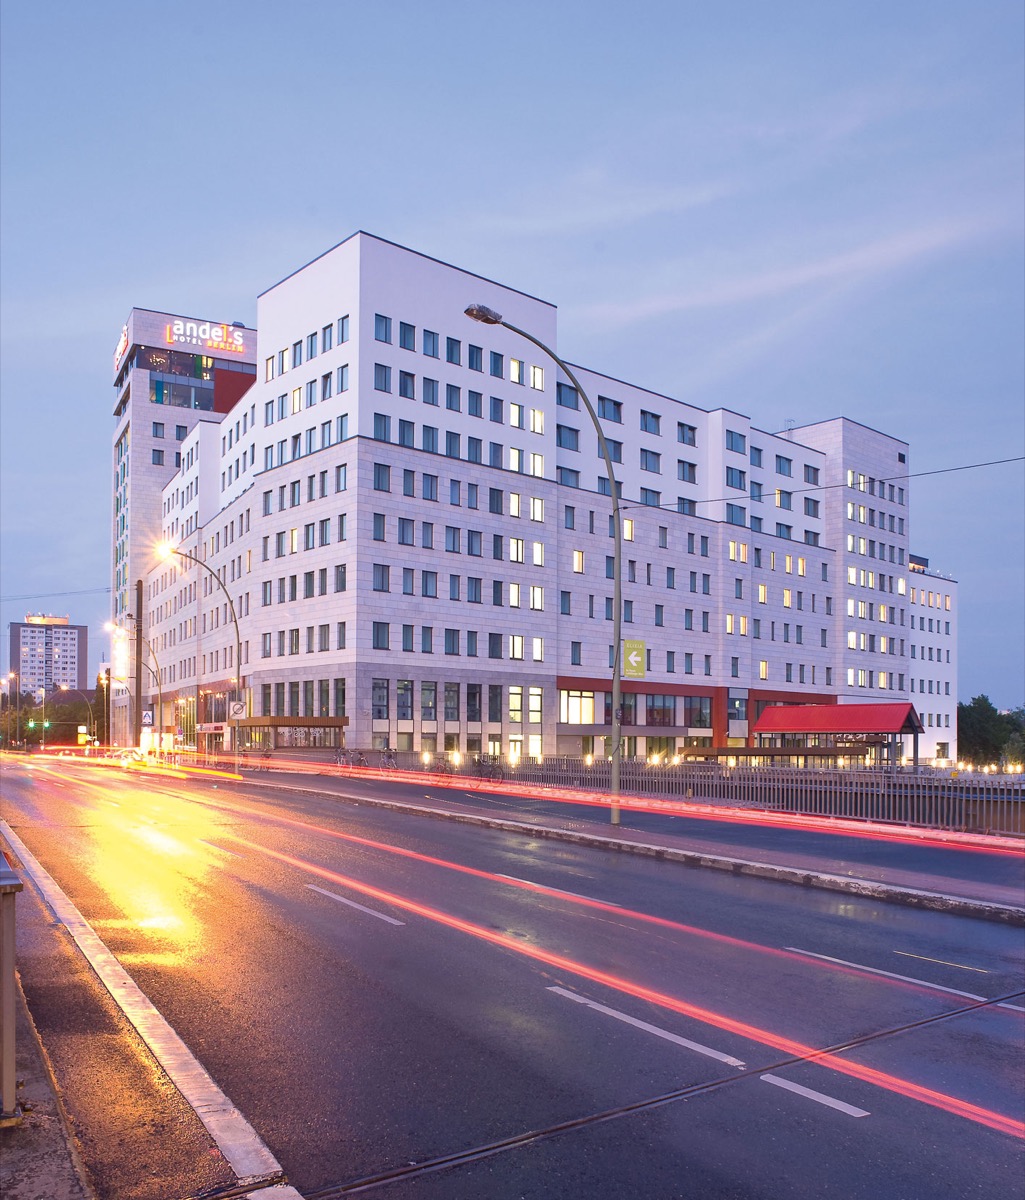 Andel's Hotel | Berlin